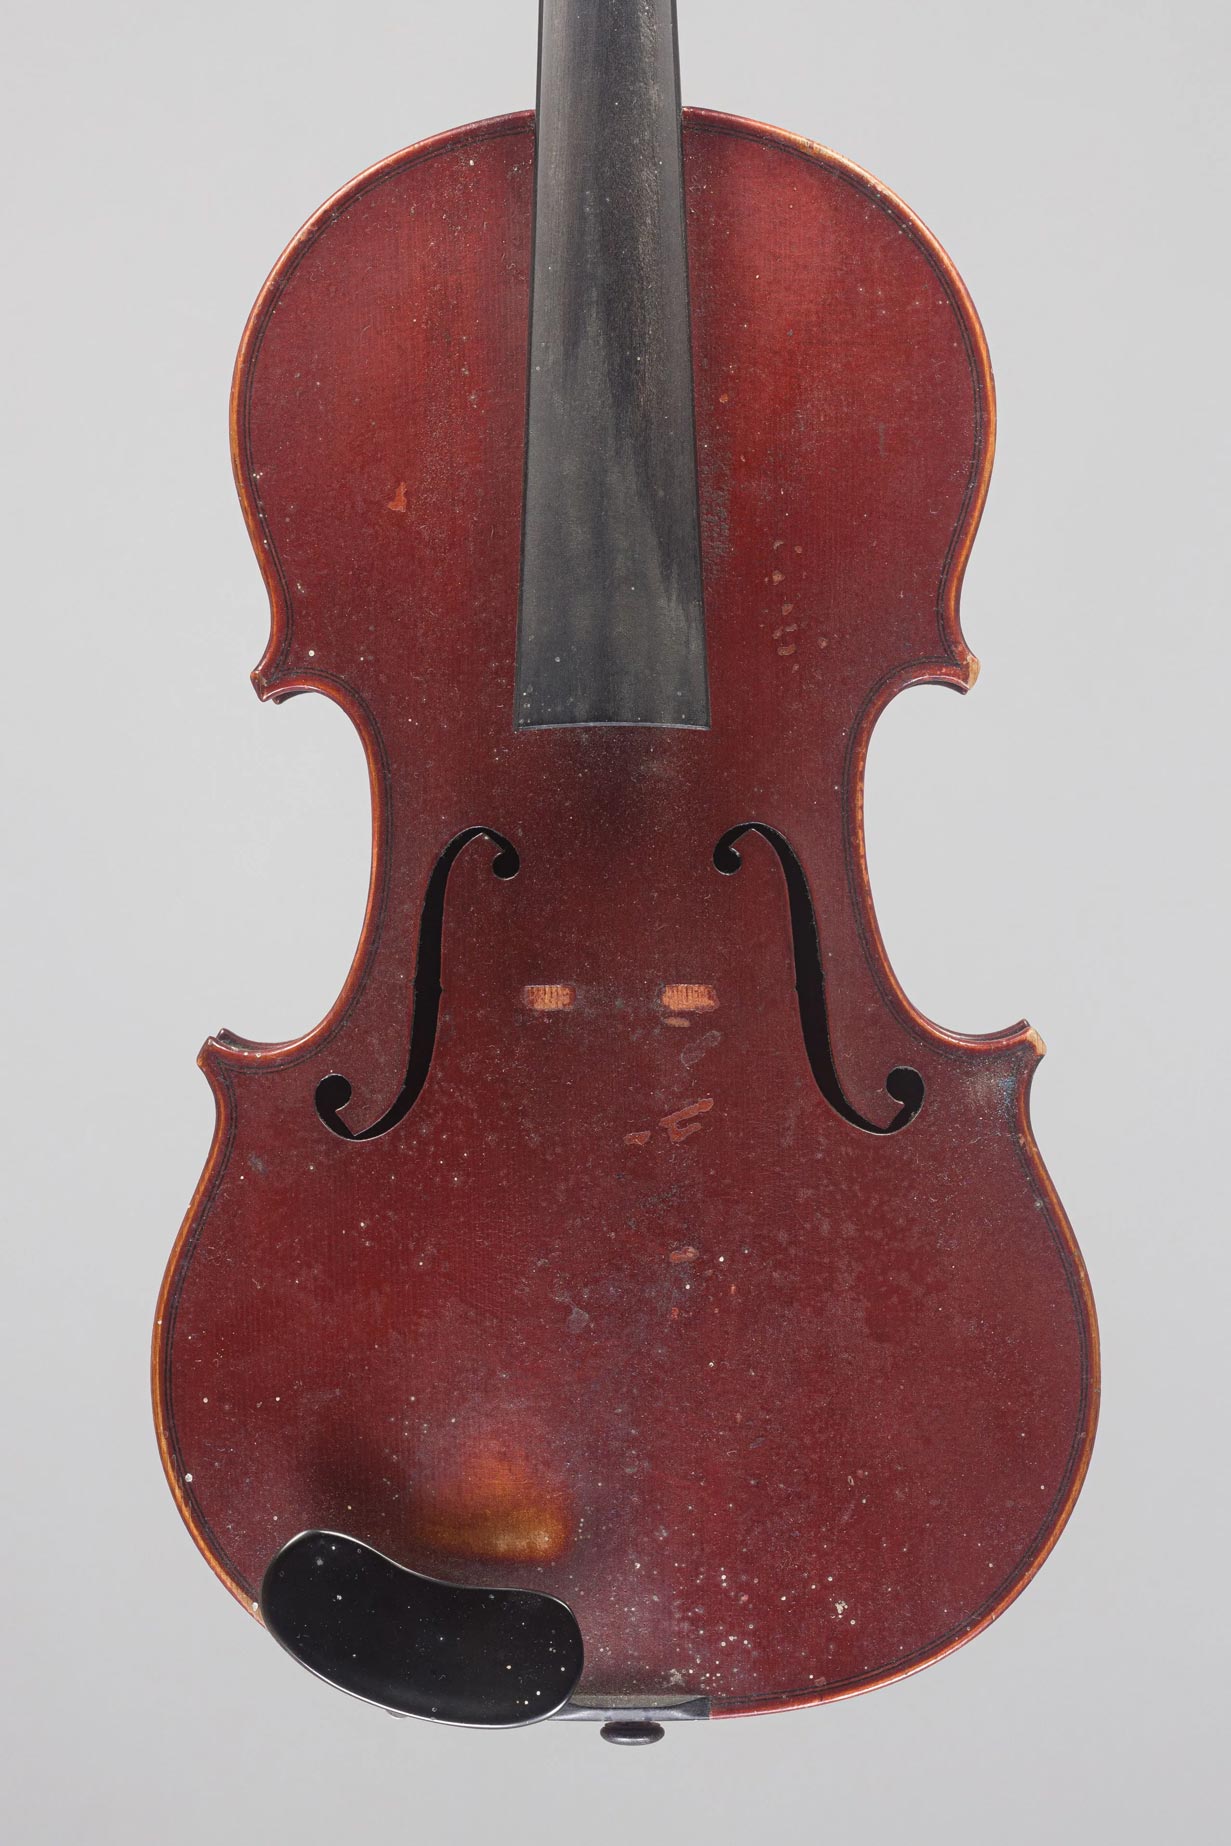 Violon de Joseph HEL Instrument mis en vente par Vichy Enchères le 2 décembre 2021 © C. Darbelet